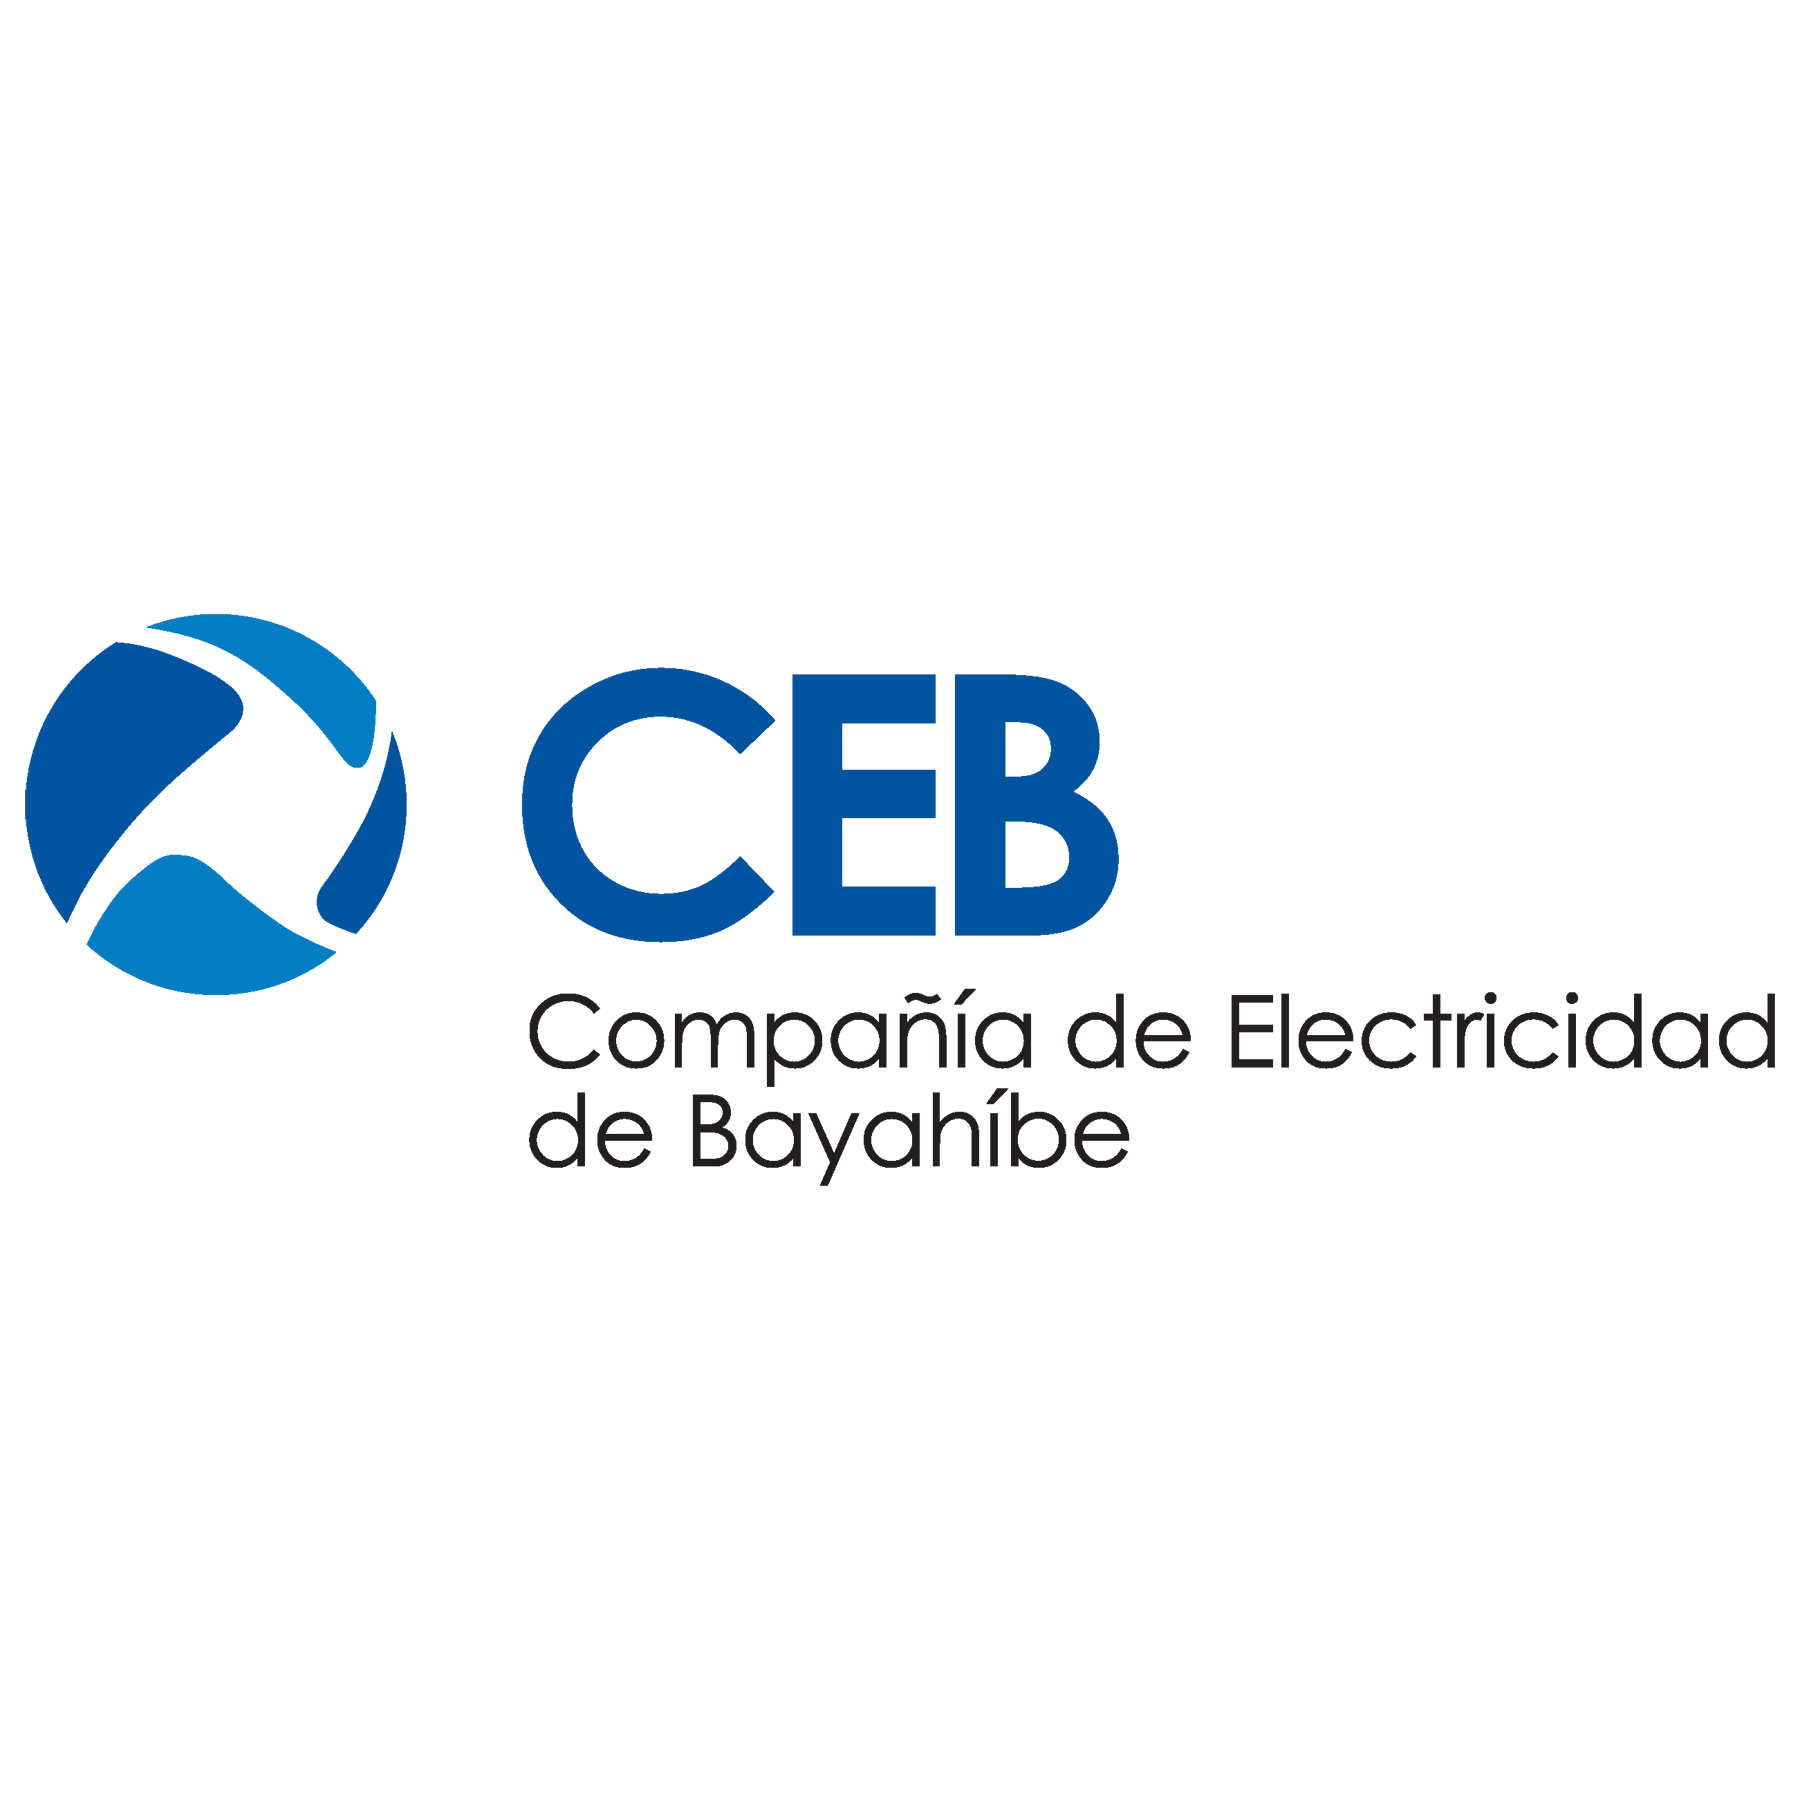 La Compañía Eléctrica de Bayahibe es una subsidiaria del Consorcio Energético Punta Cana-Macao (CEPM) que provee energía a la población de Bayahibe.